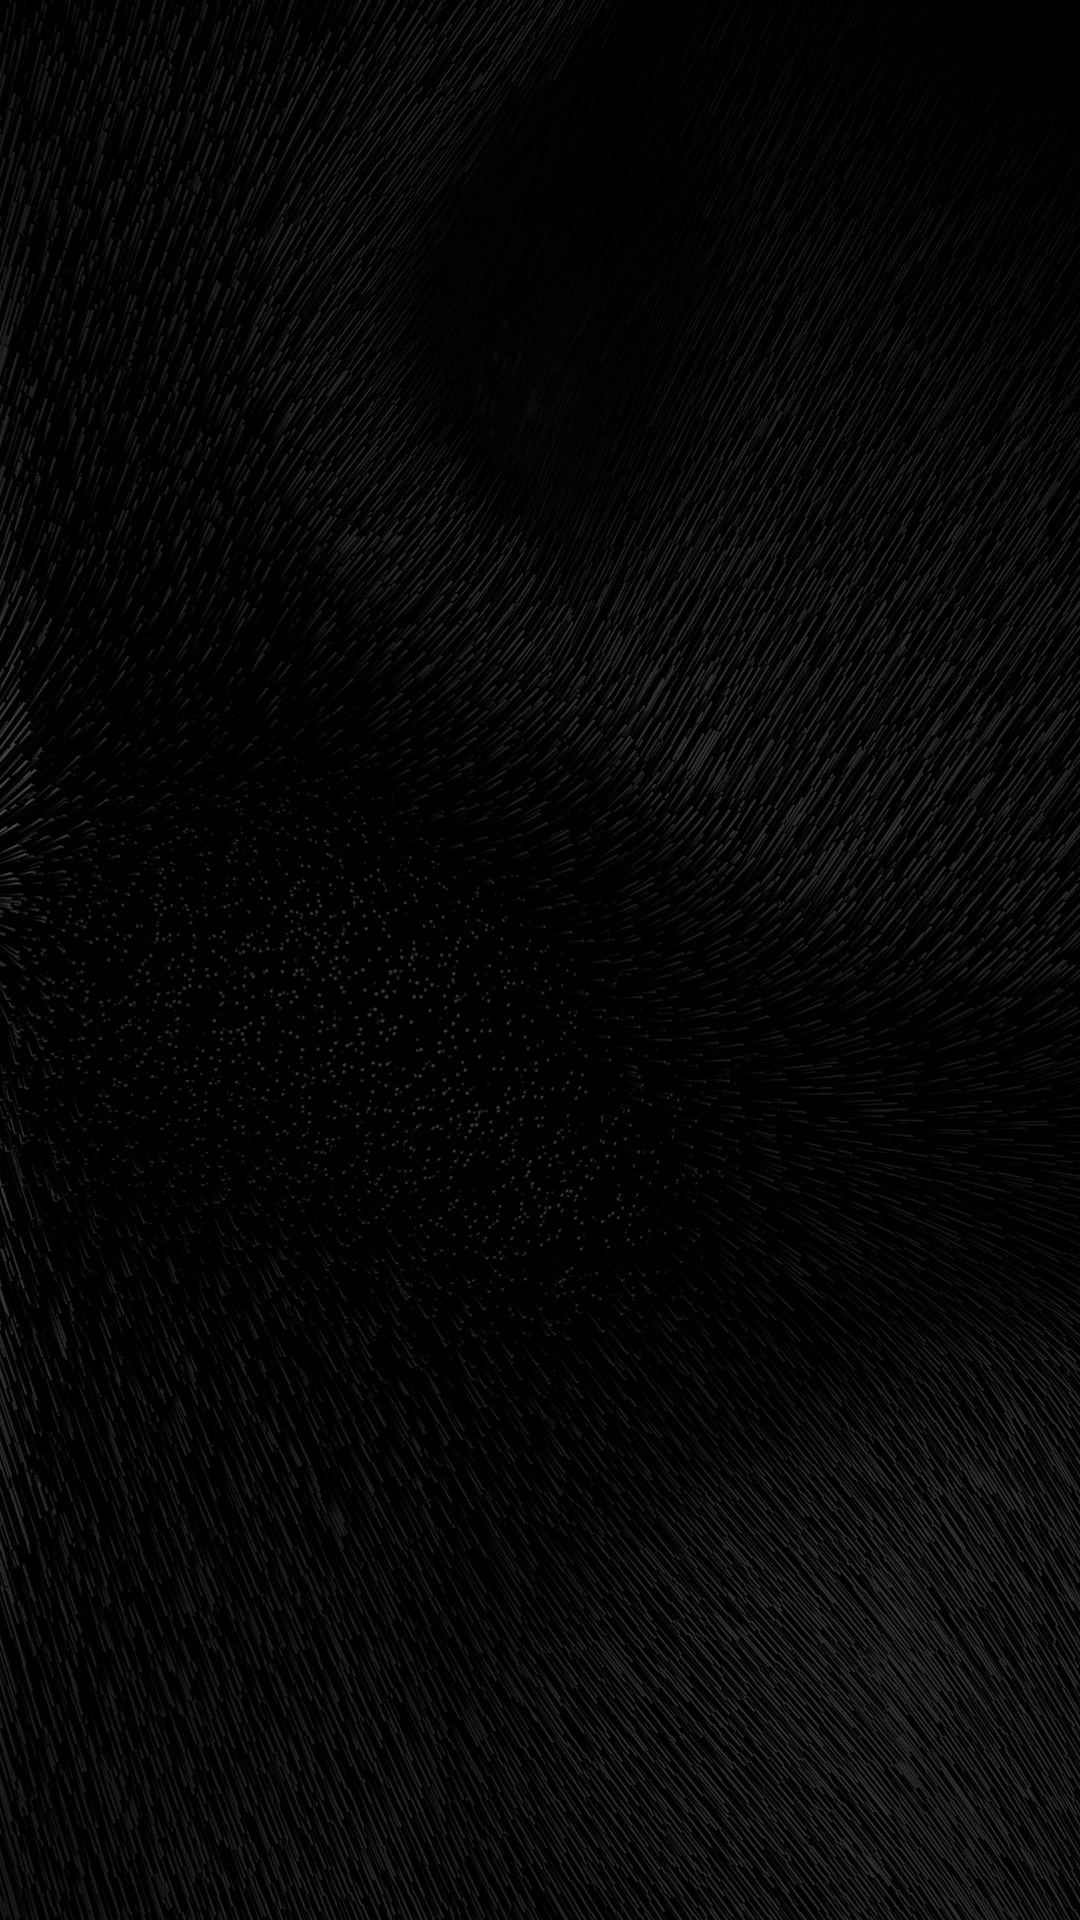 19+] 1920X1080 Black HD Wallpapers - WallpaperSafari